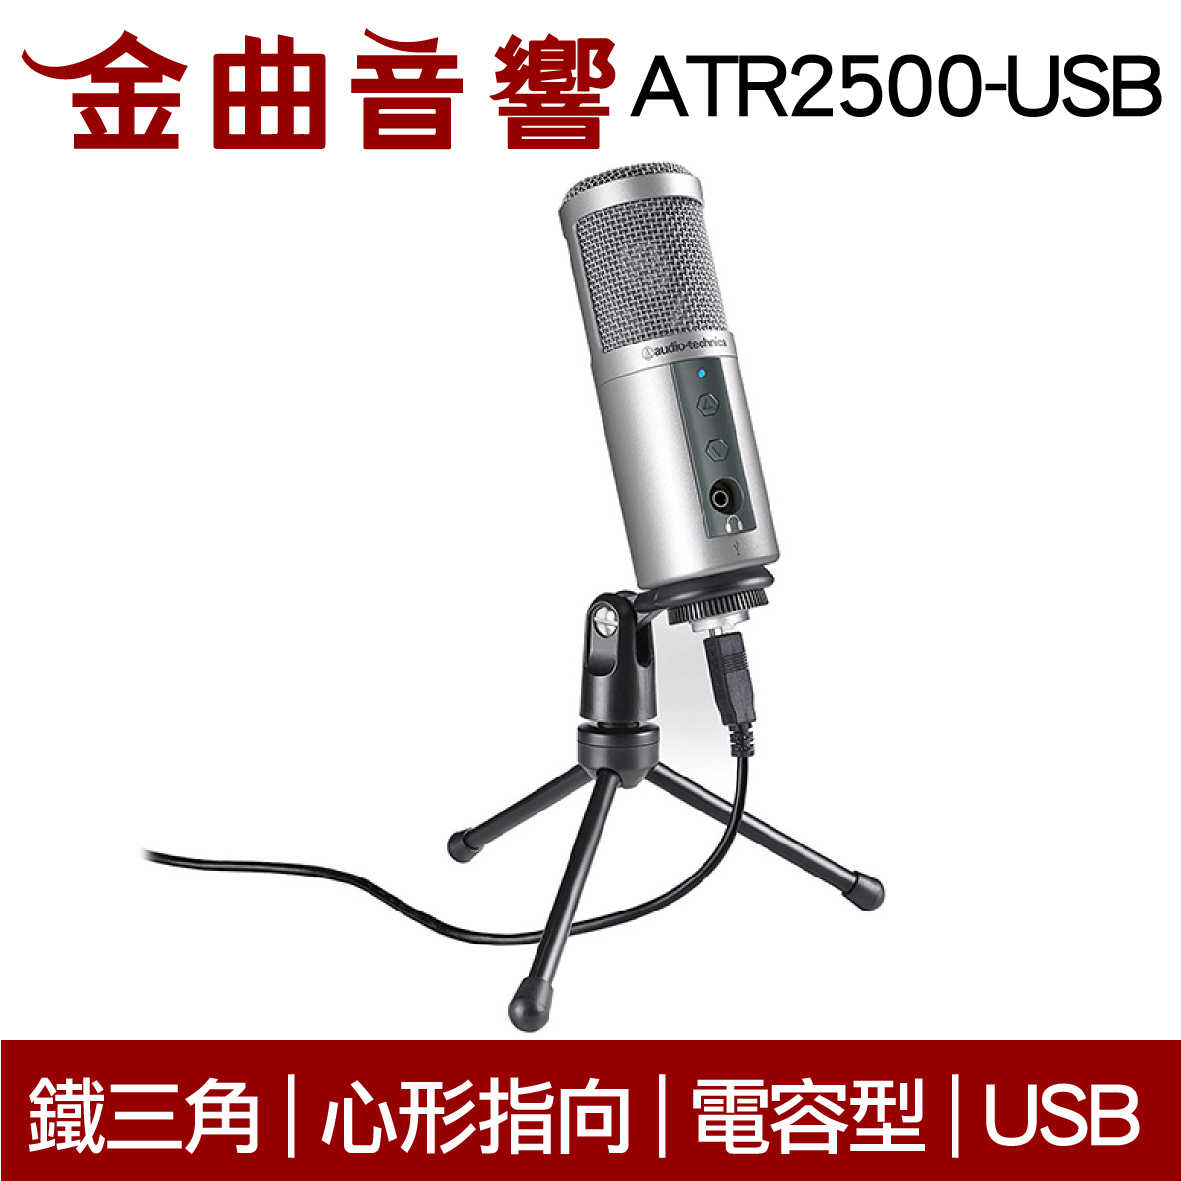 鐵三角 ATR2500-USB 專業 心型指向 電容式 USB 麥克風 | 金曲音響